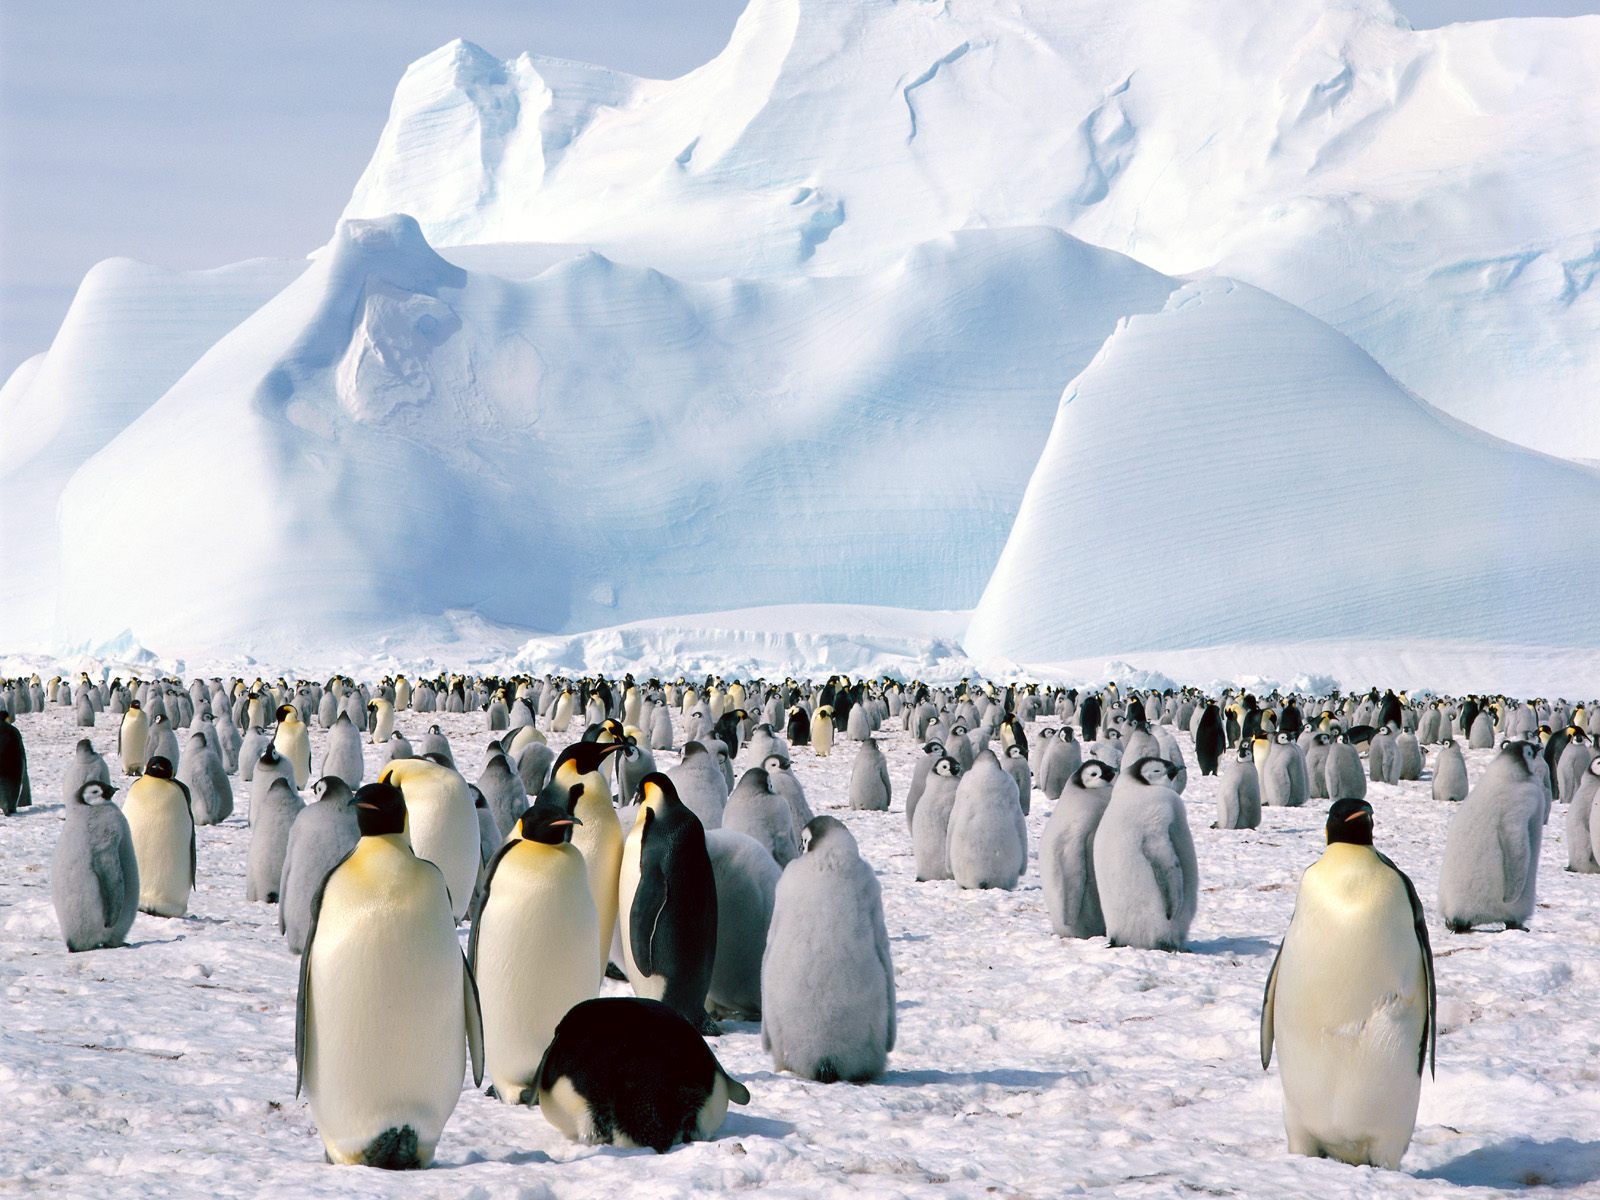 壁纸1600x1200企鹅摄影壁纸 企鹅图片壁纸 penguin Desktop Photos壁纸 企鹅壁纸壁纸 企鹅壁纸图片 企鹅壁纸素材 动物壁纸 动物图库 动物图片素材桌面壁纸